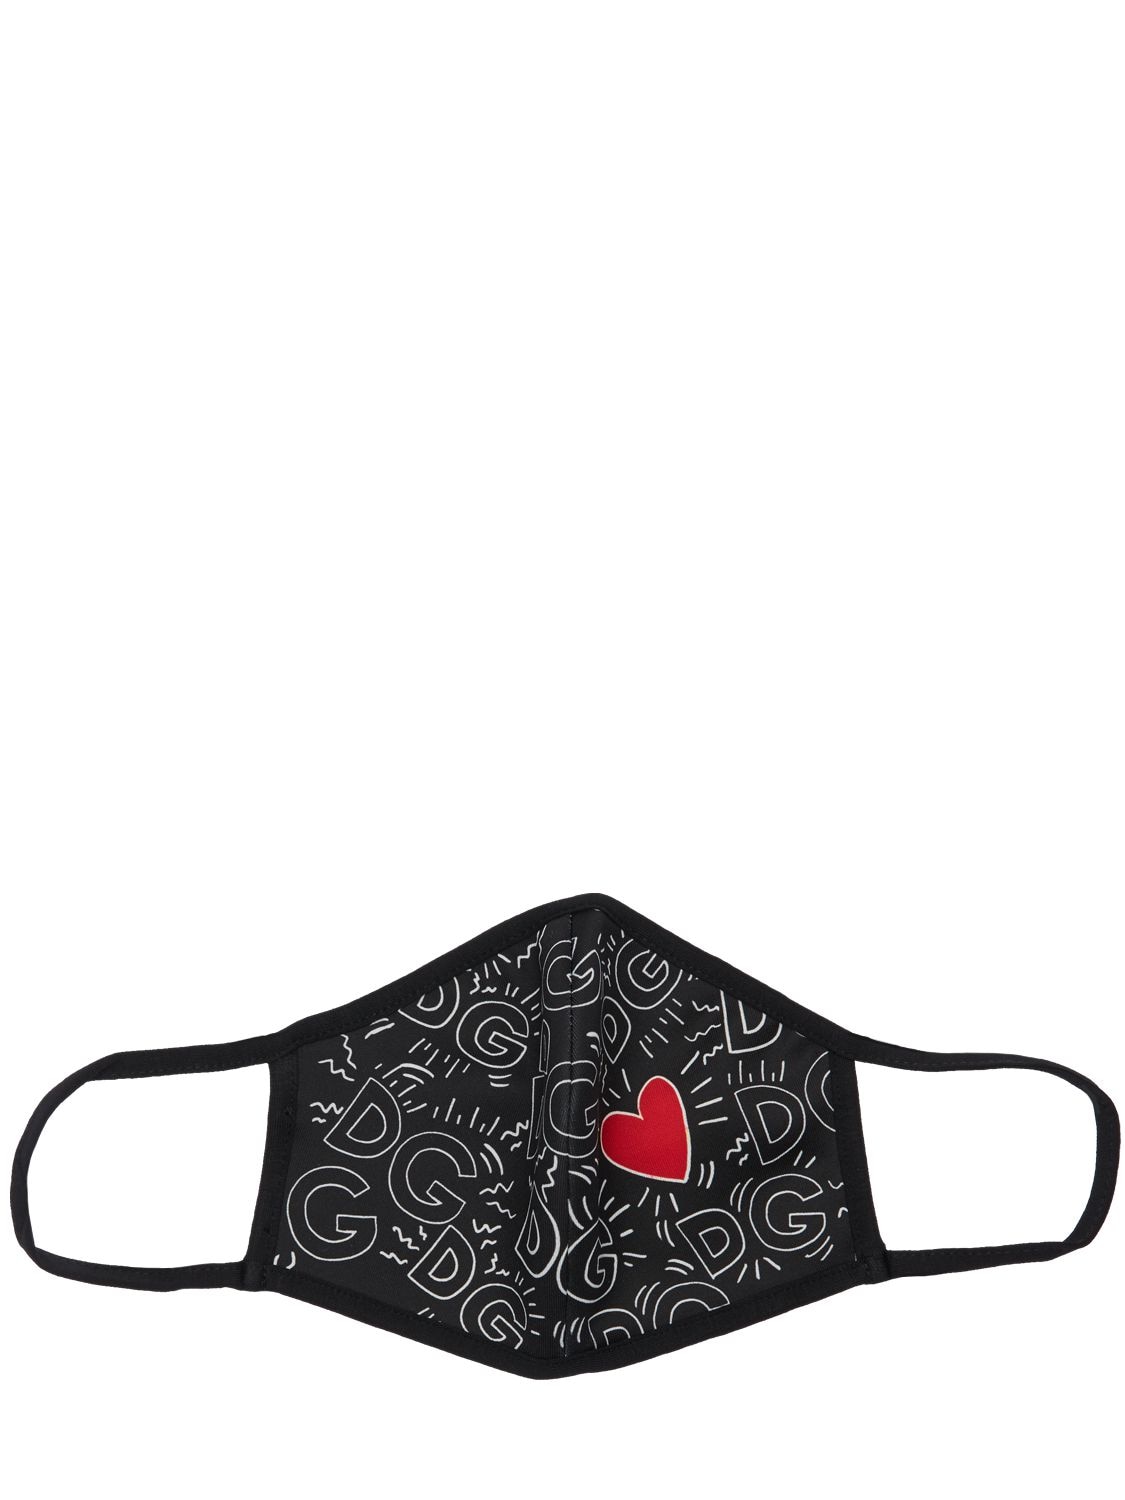 Dolce & Gabbana Printed Heart Mask